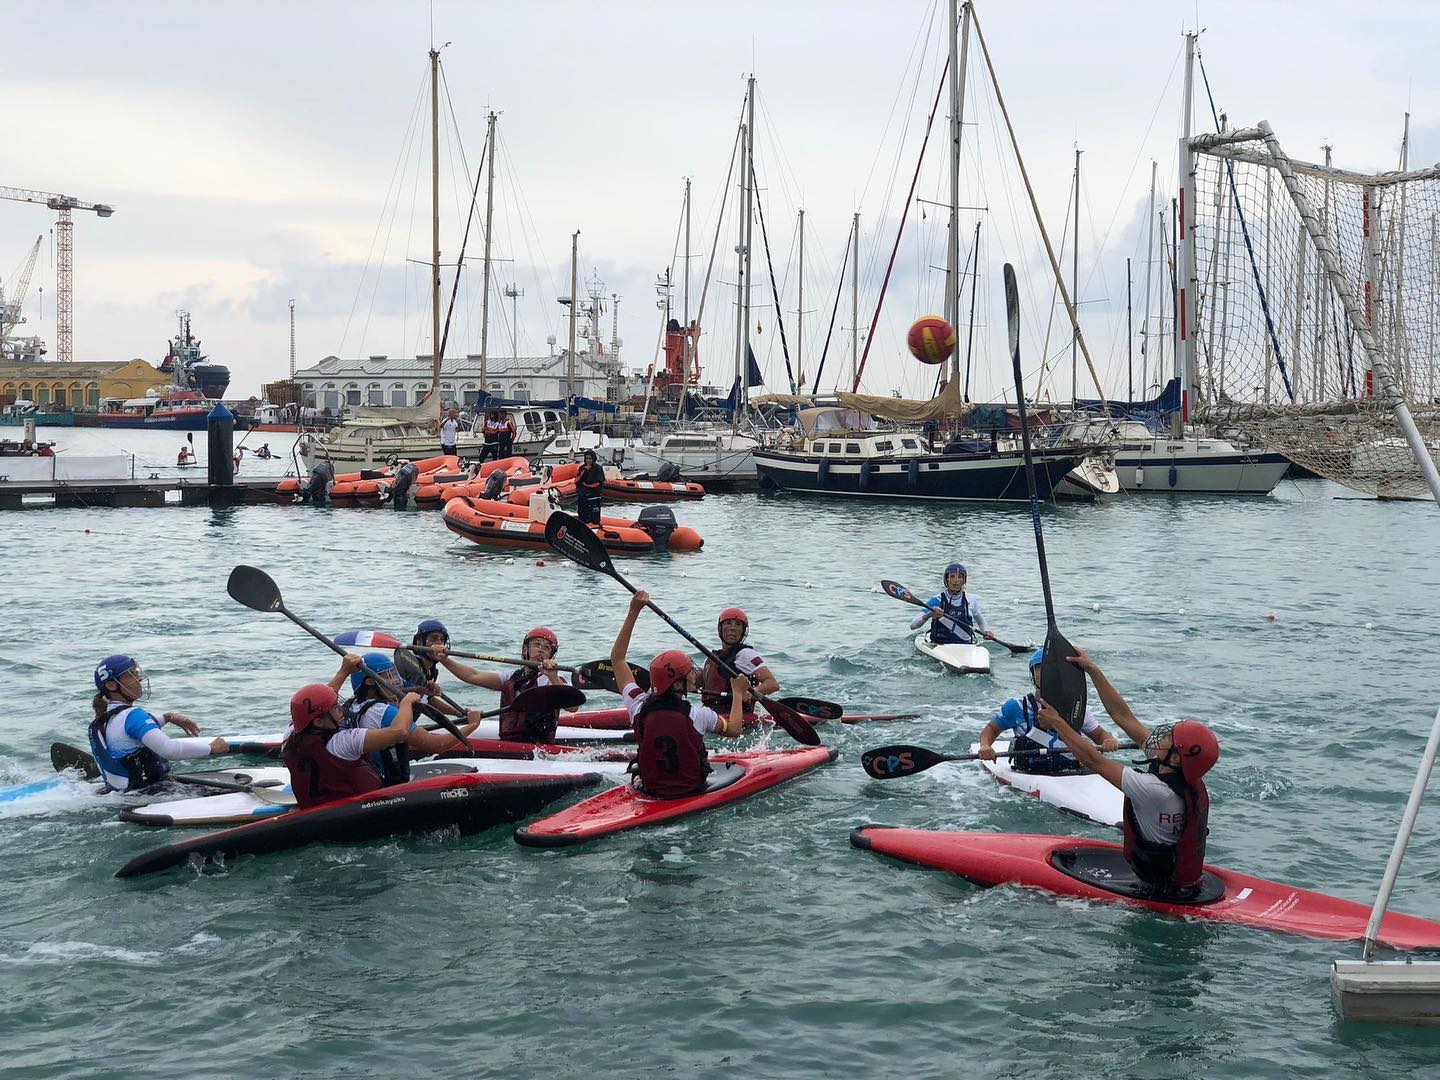 La Comunitat Valenciana se alza con el triunfo en el XXV Campeonato de España por autonomías de Kayak Polo disputado en Burriana